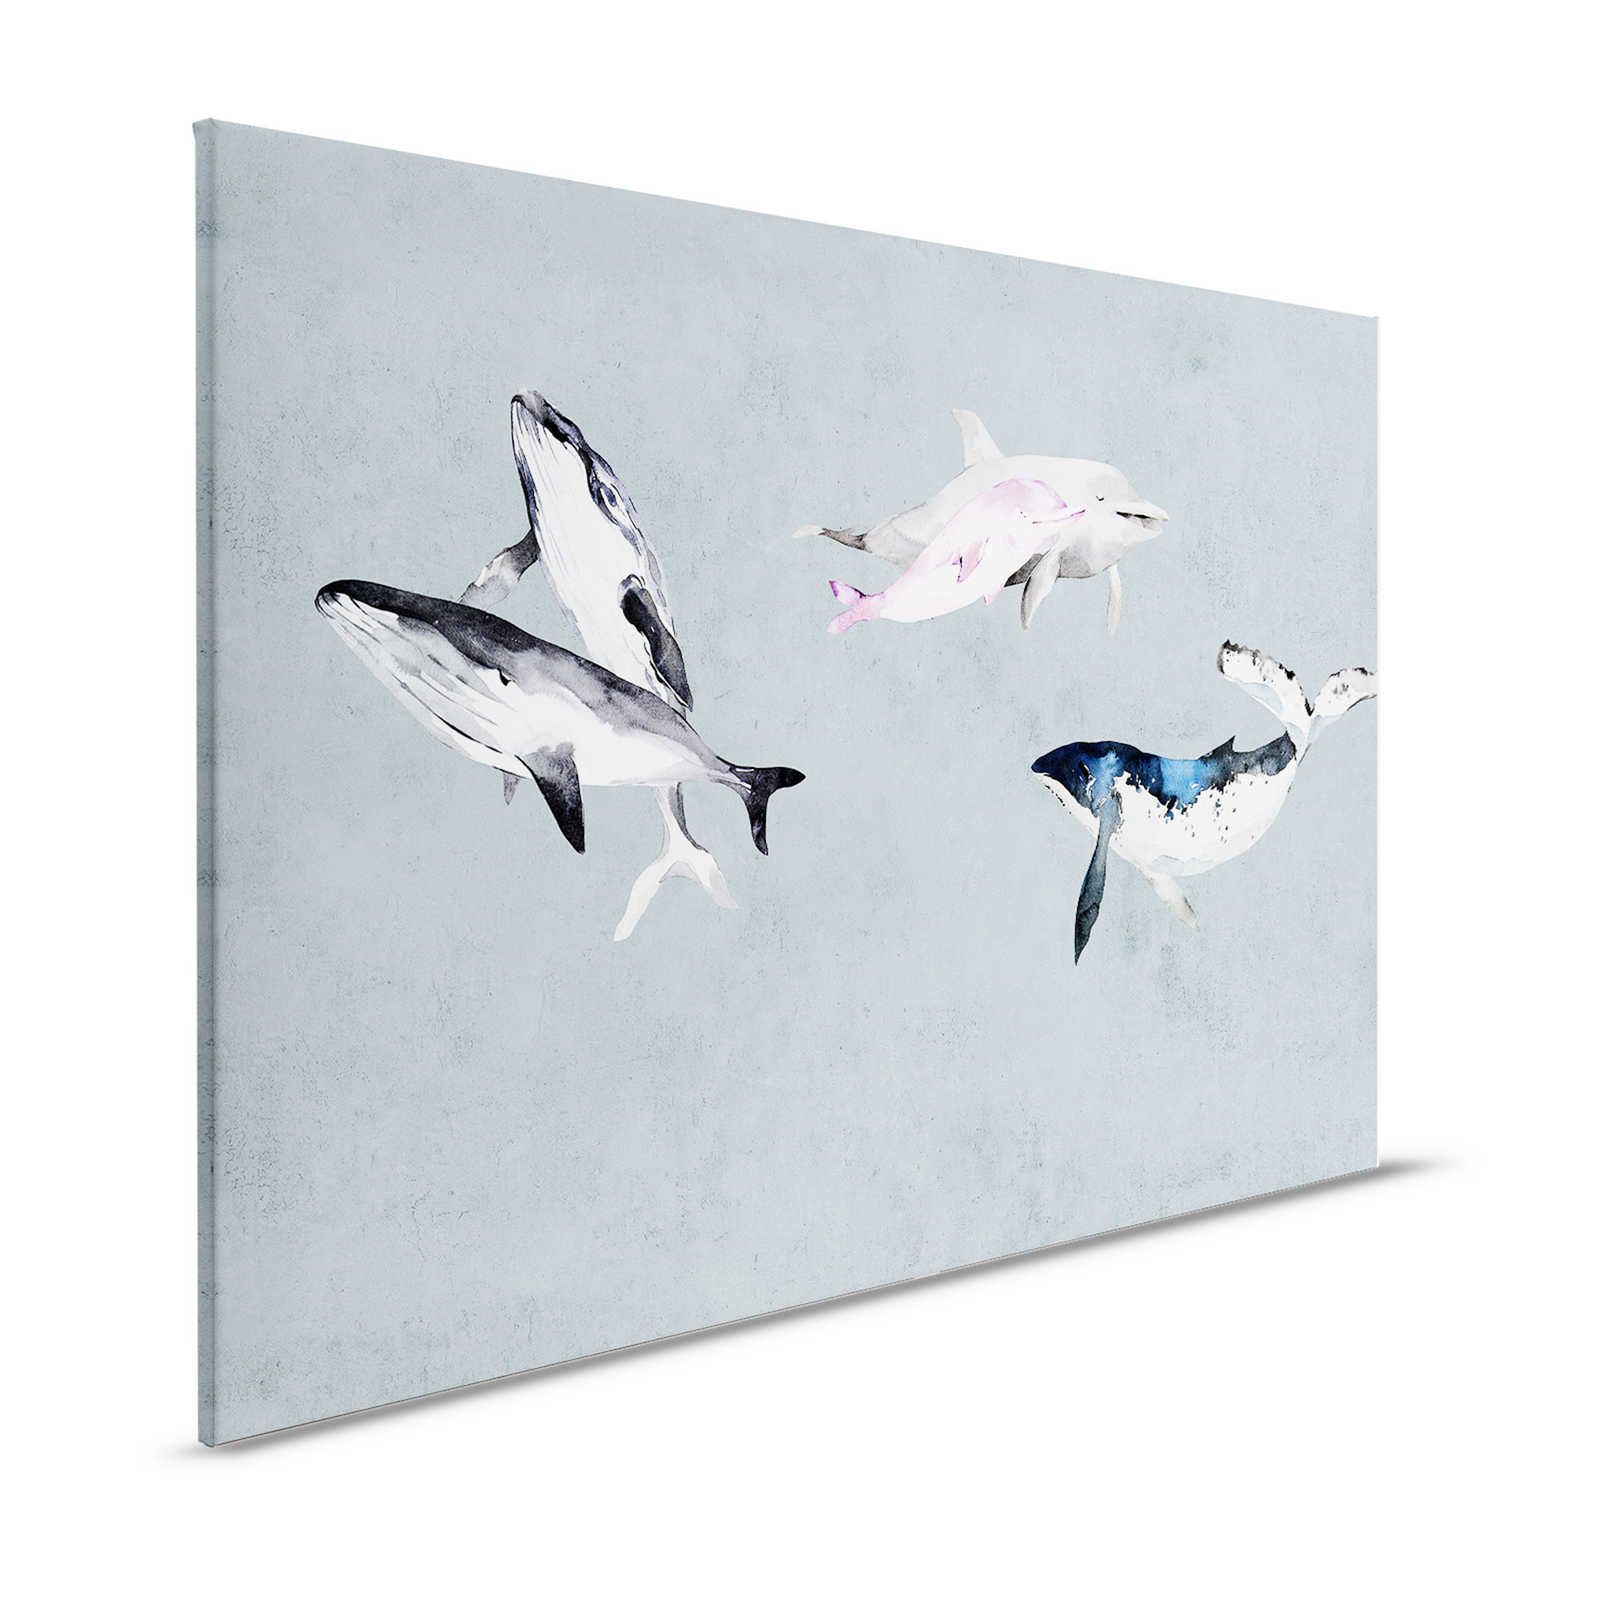 Oceans Five 1 - Canvas schilderij Walvissen & Dolfijnen in aquarelstijl - 1.20 m x 0.80 m
